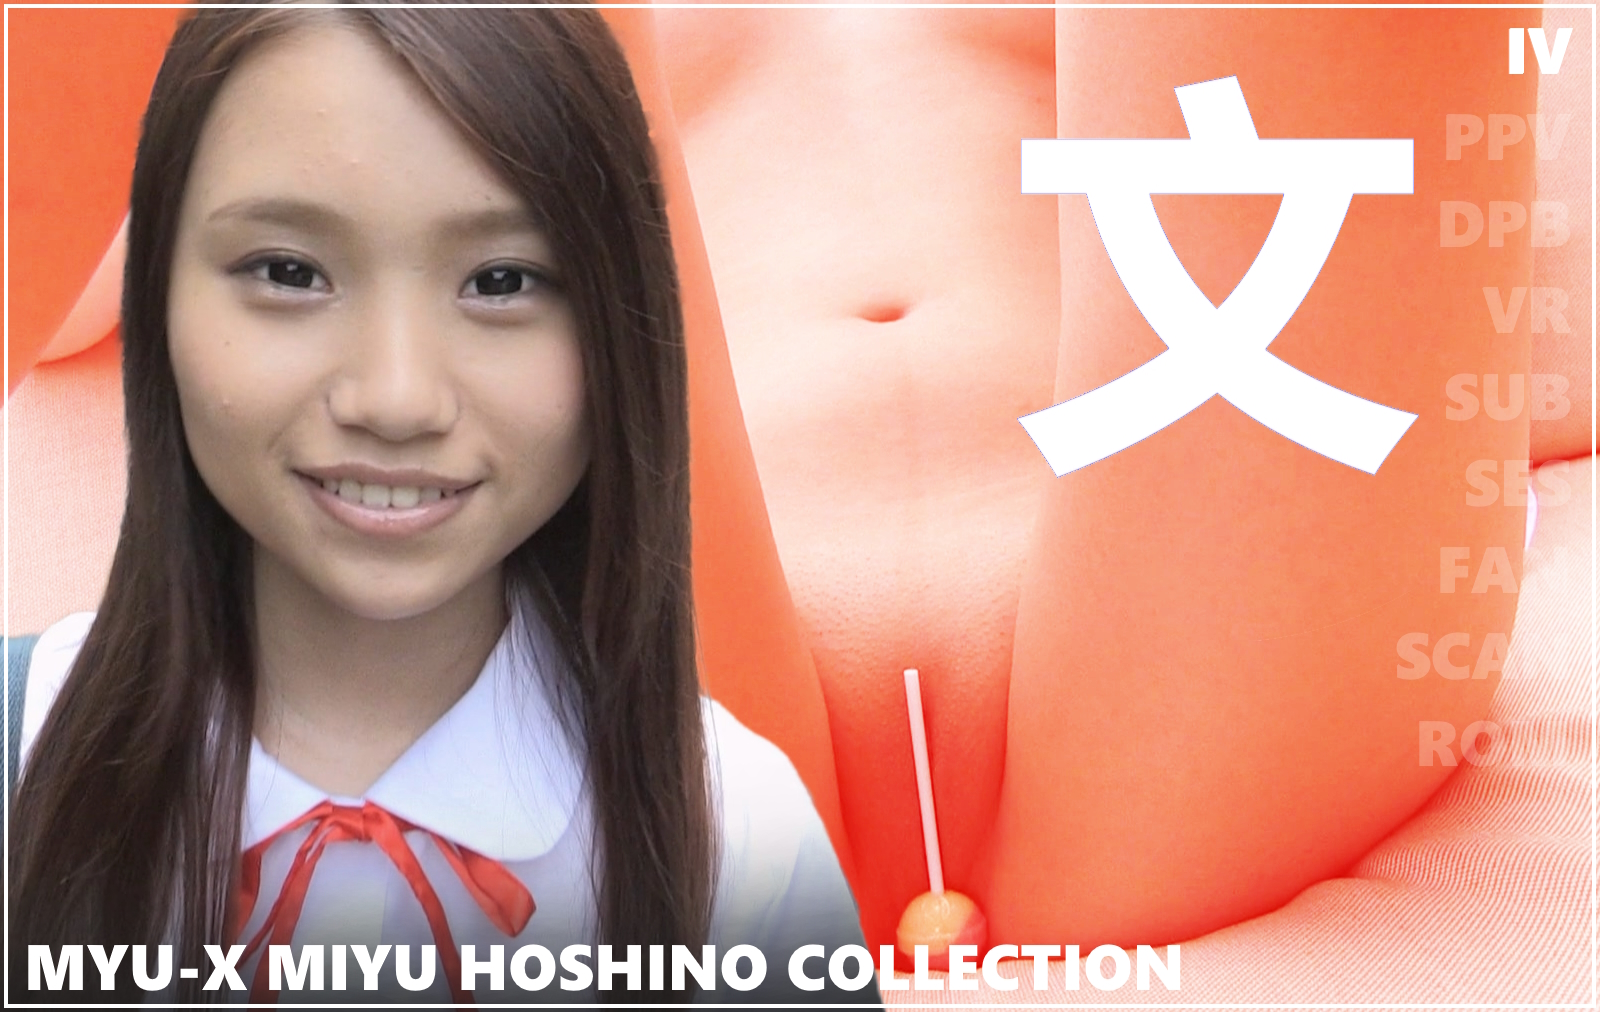 MYU-X Miyu Hoshino Collection